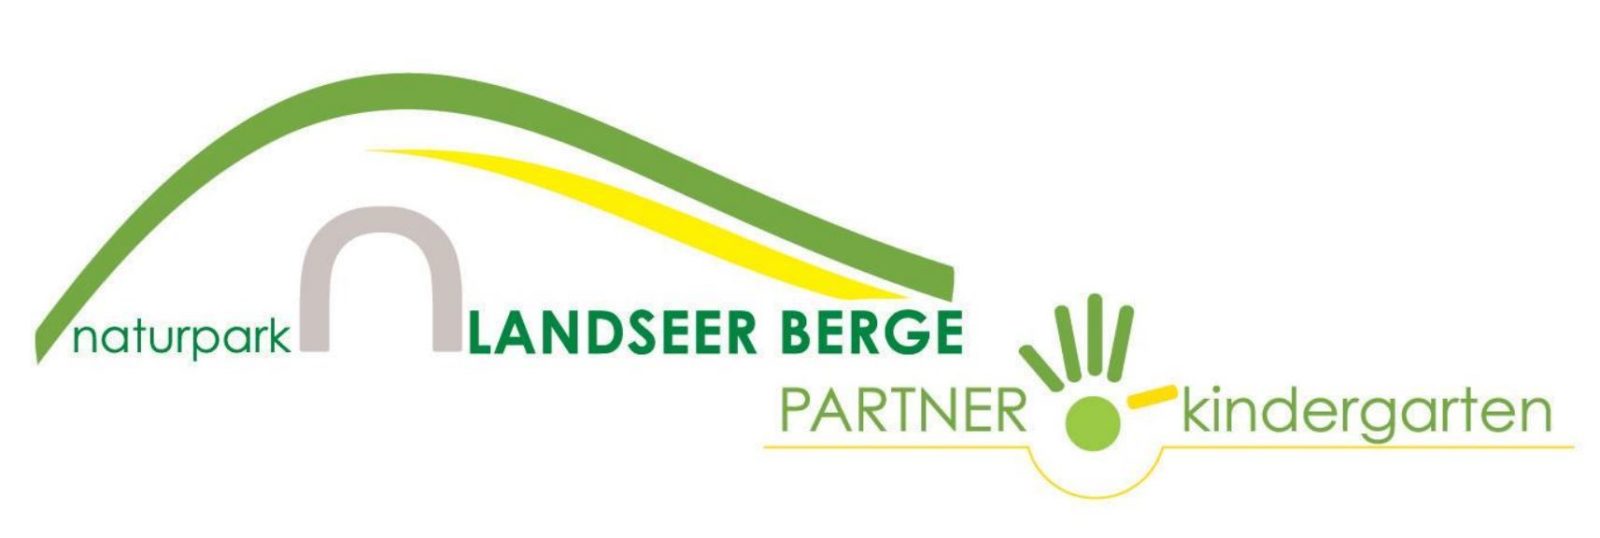 Logo Naturparkkindergarten